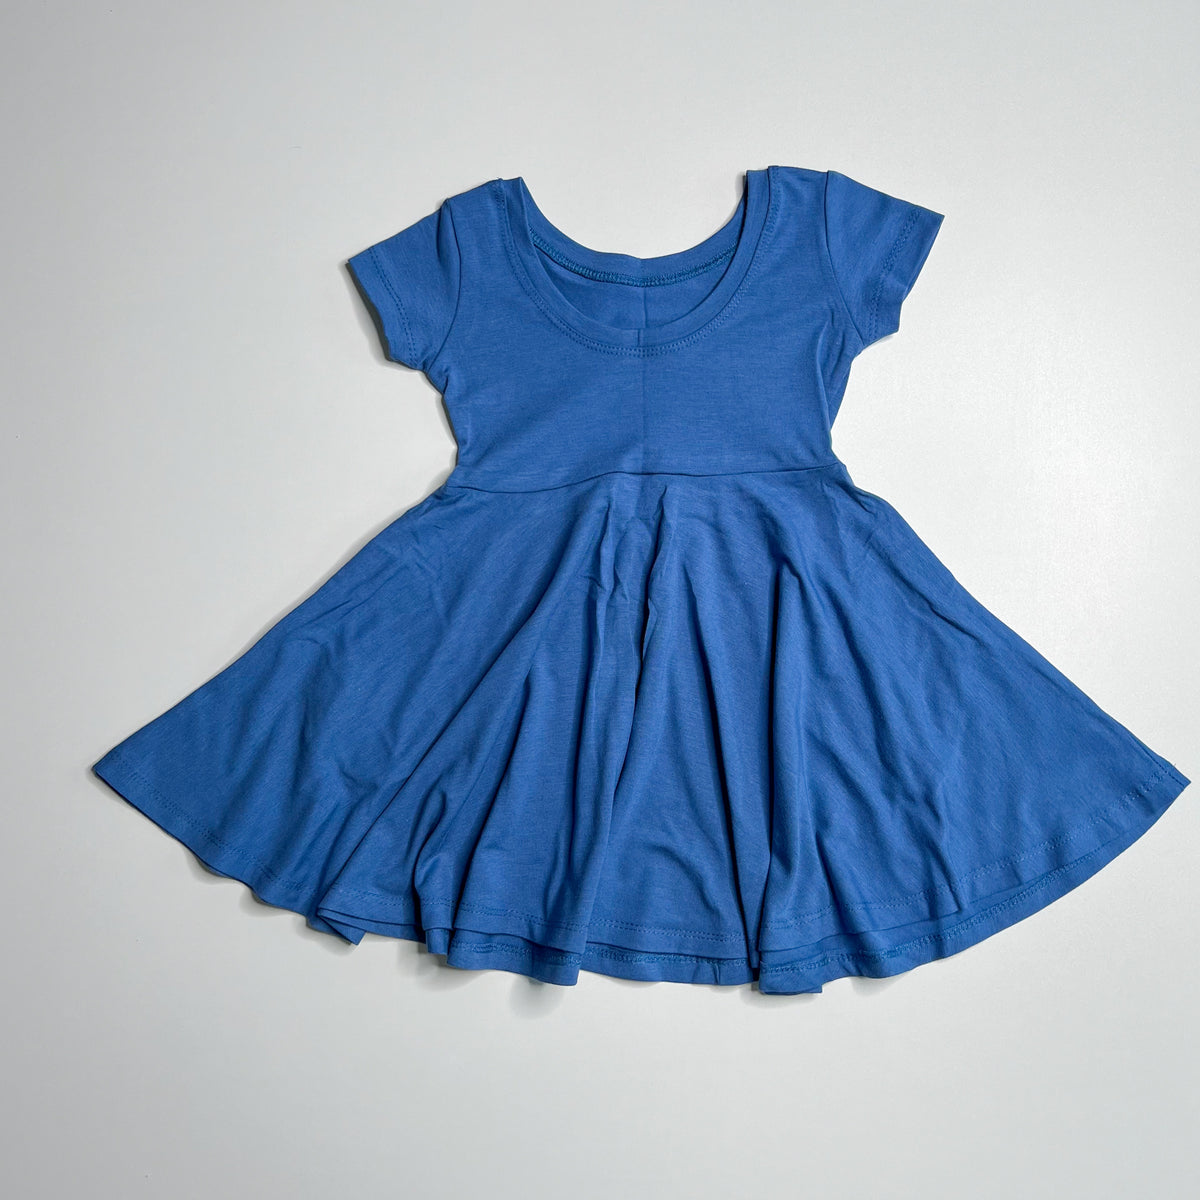 Elle Twirl Dress [Cap Sleeve] in 'Atlantic Blue - Ready To Ship